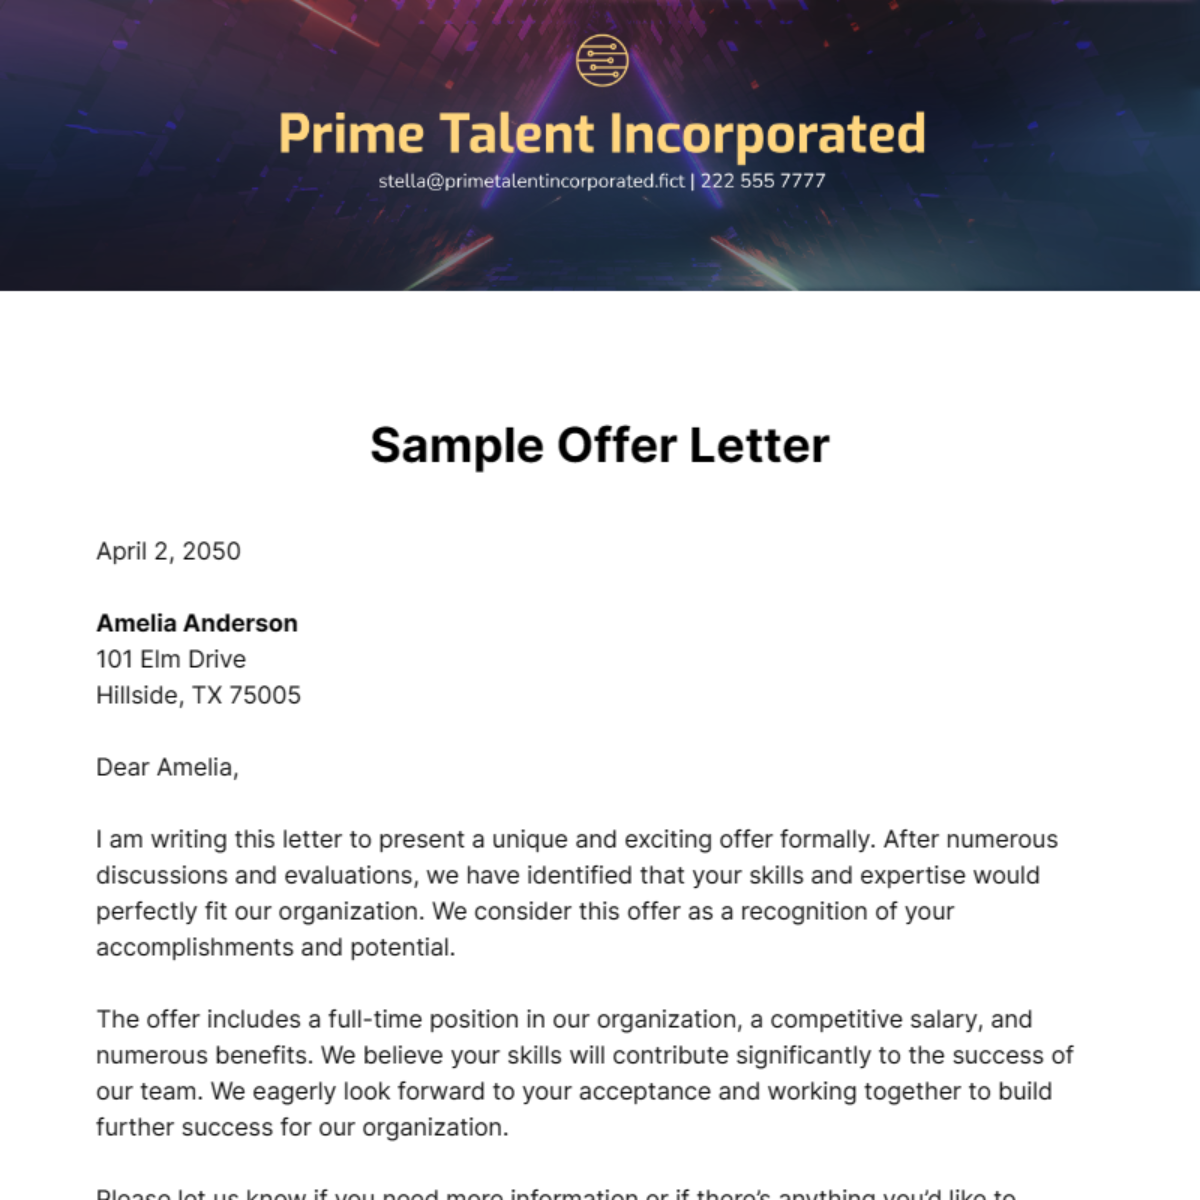 Sample Offer Letter Template